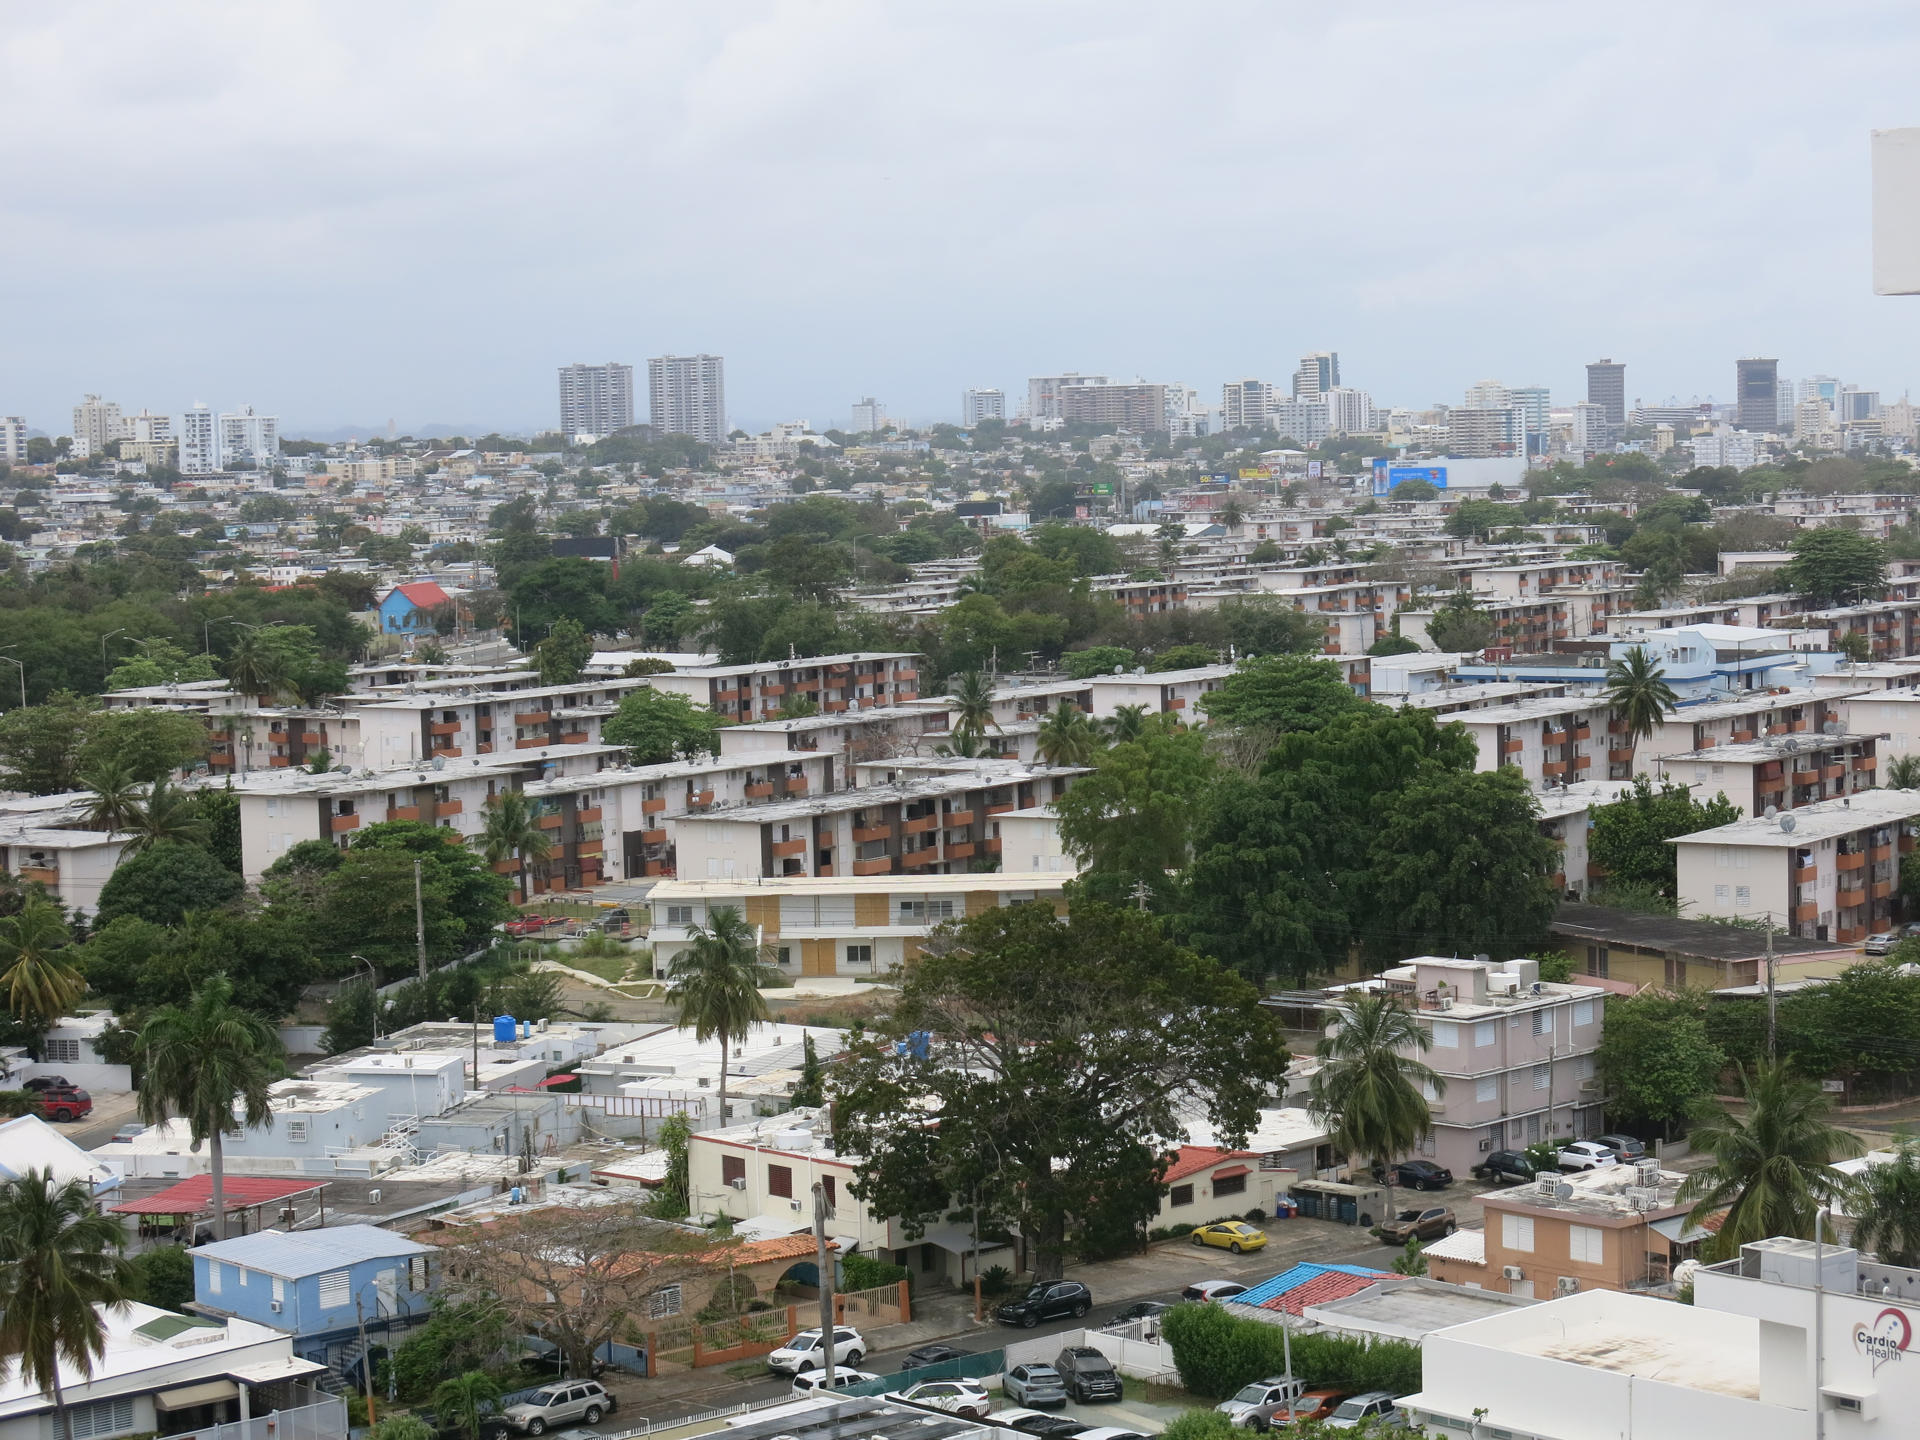 Vista general del Residencial Luis Lloréns Torres, el complejo de vivienda pública más grande de Puerto Rico, en San Juan (Puerto Rico). Imagen de archivo. EFE/ Marina Villén